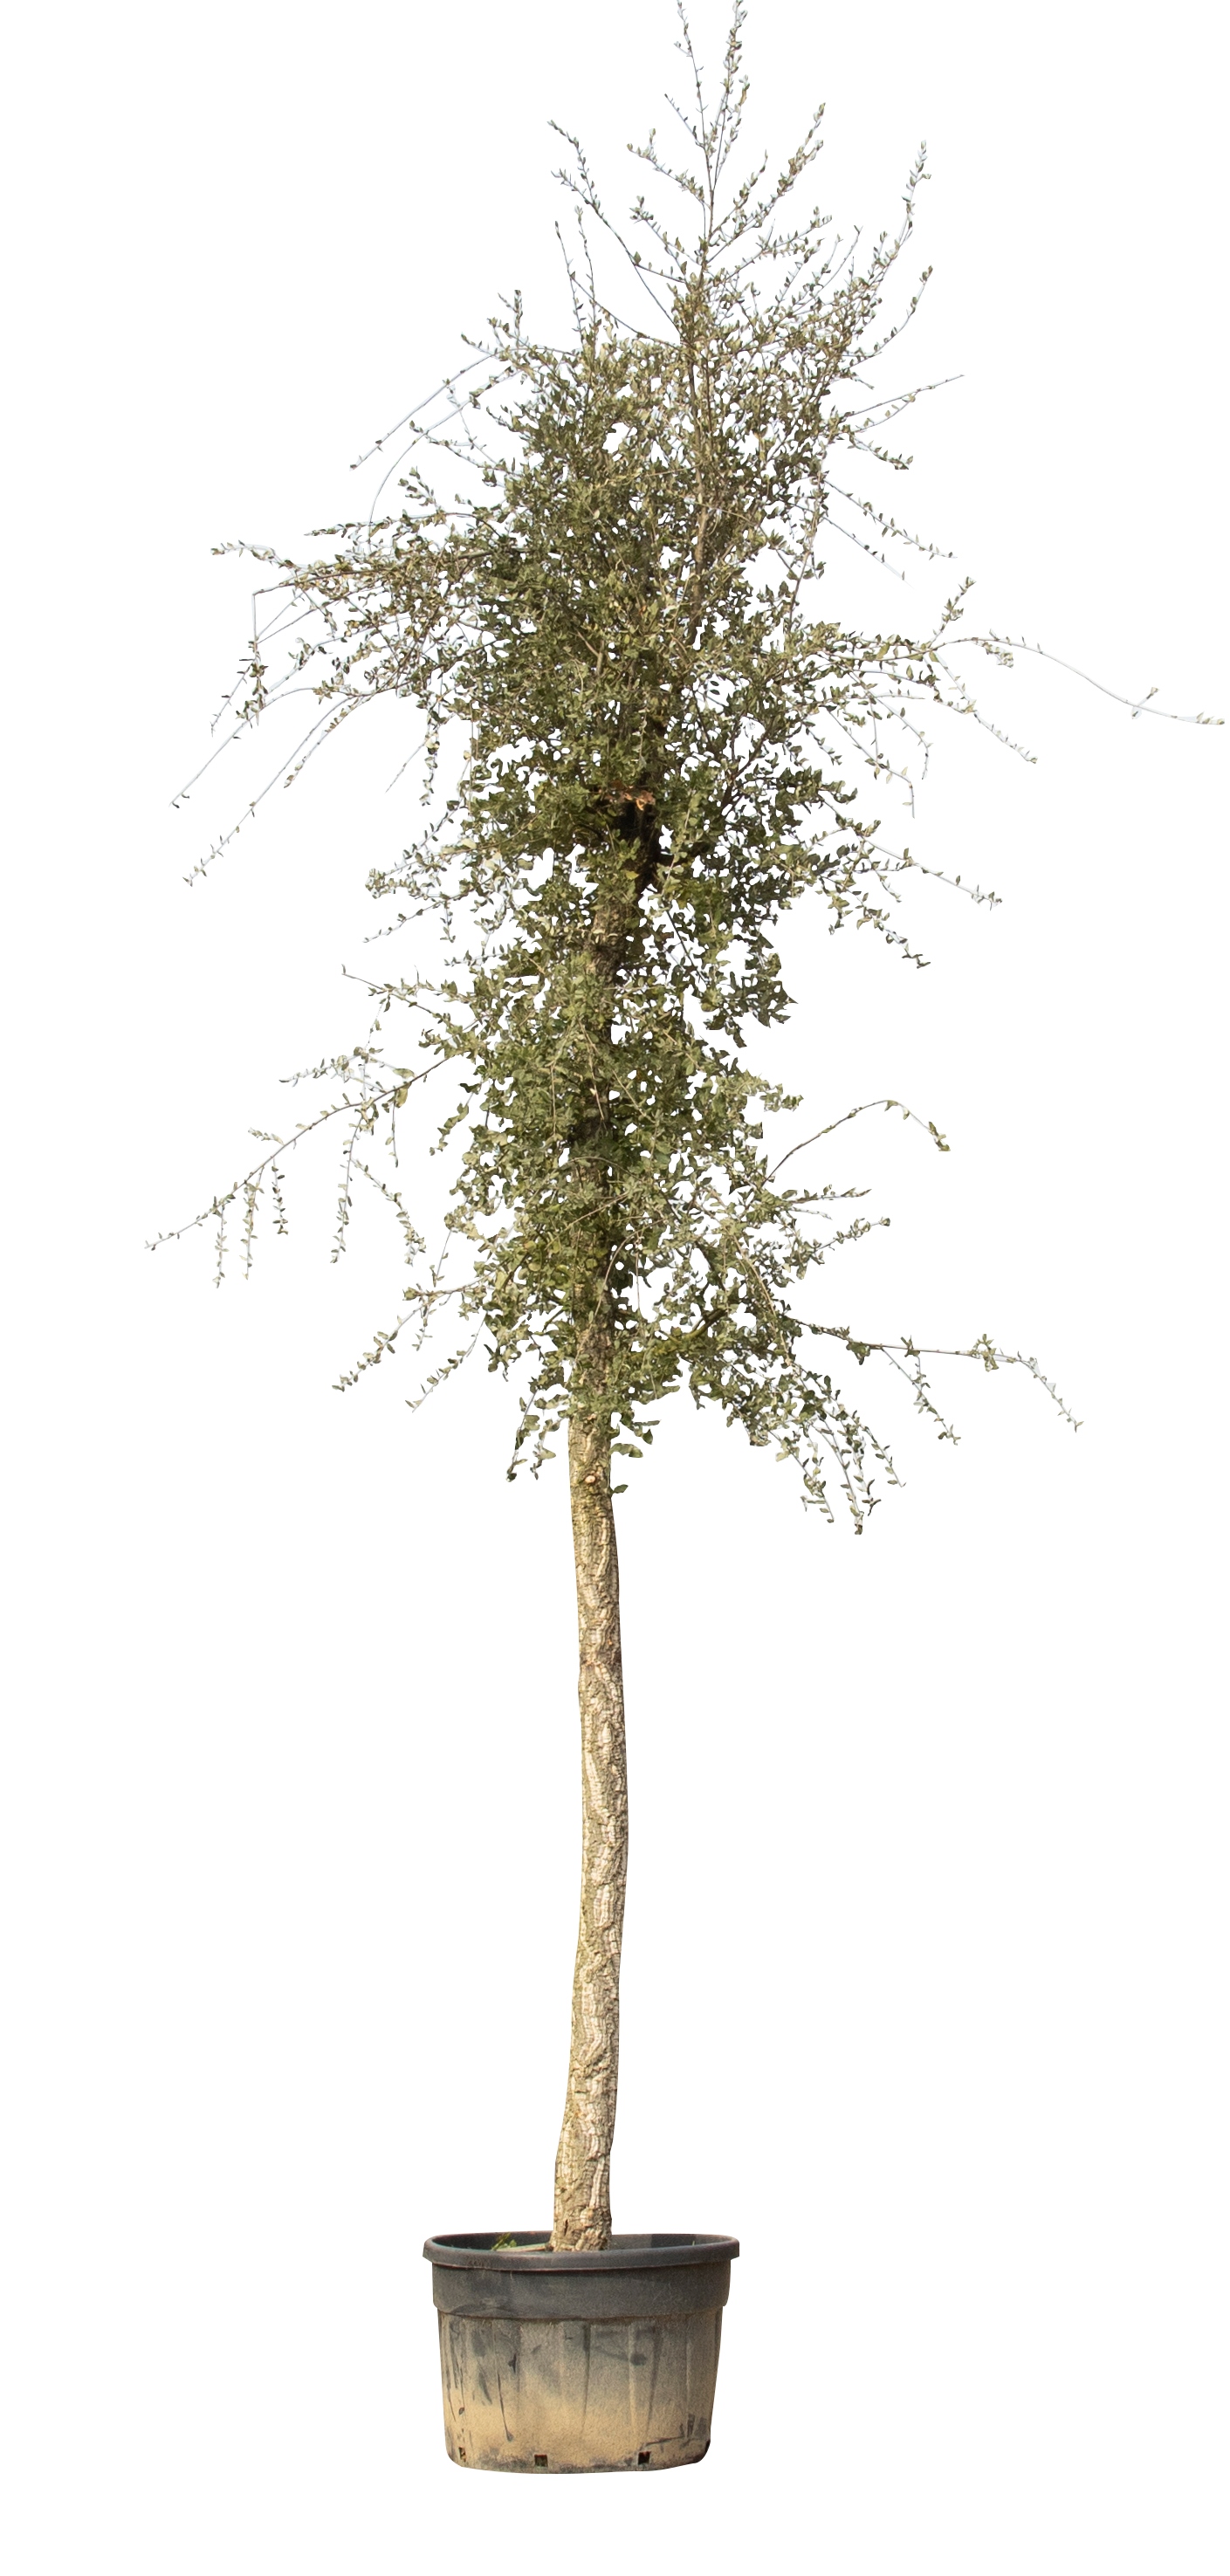 Kurkeik volgroeid Quercus suber 625 cmWarentuin Natuurlijk